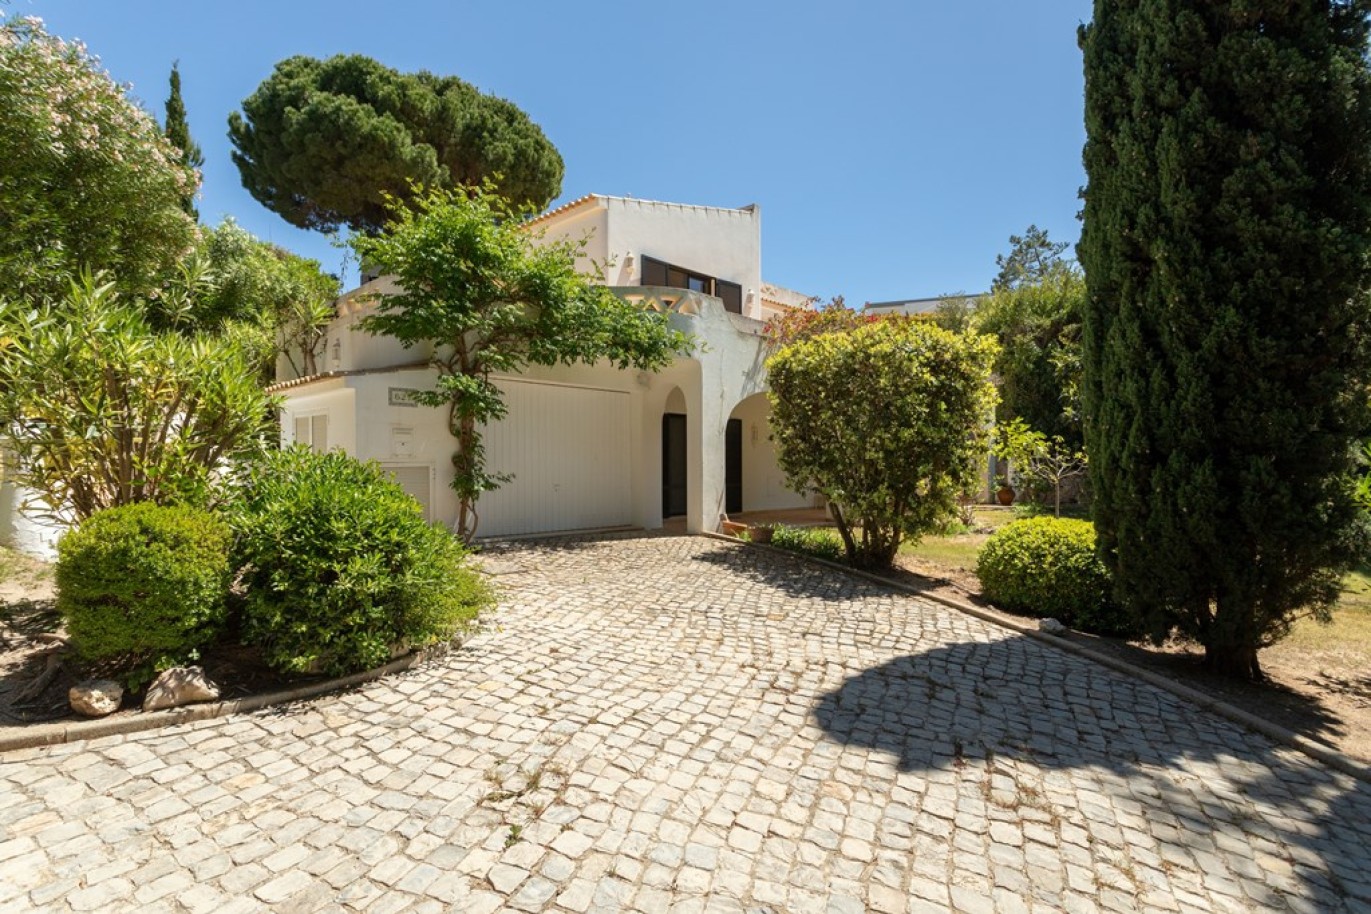 Detached house for sale in Vale do Lobo, Algarve_264567